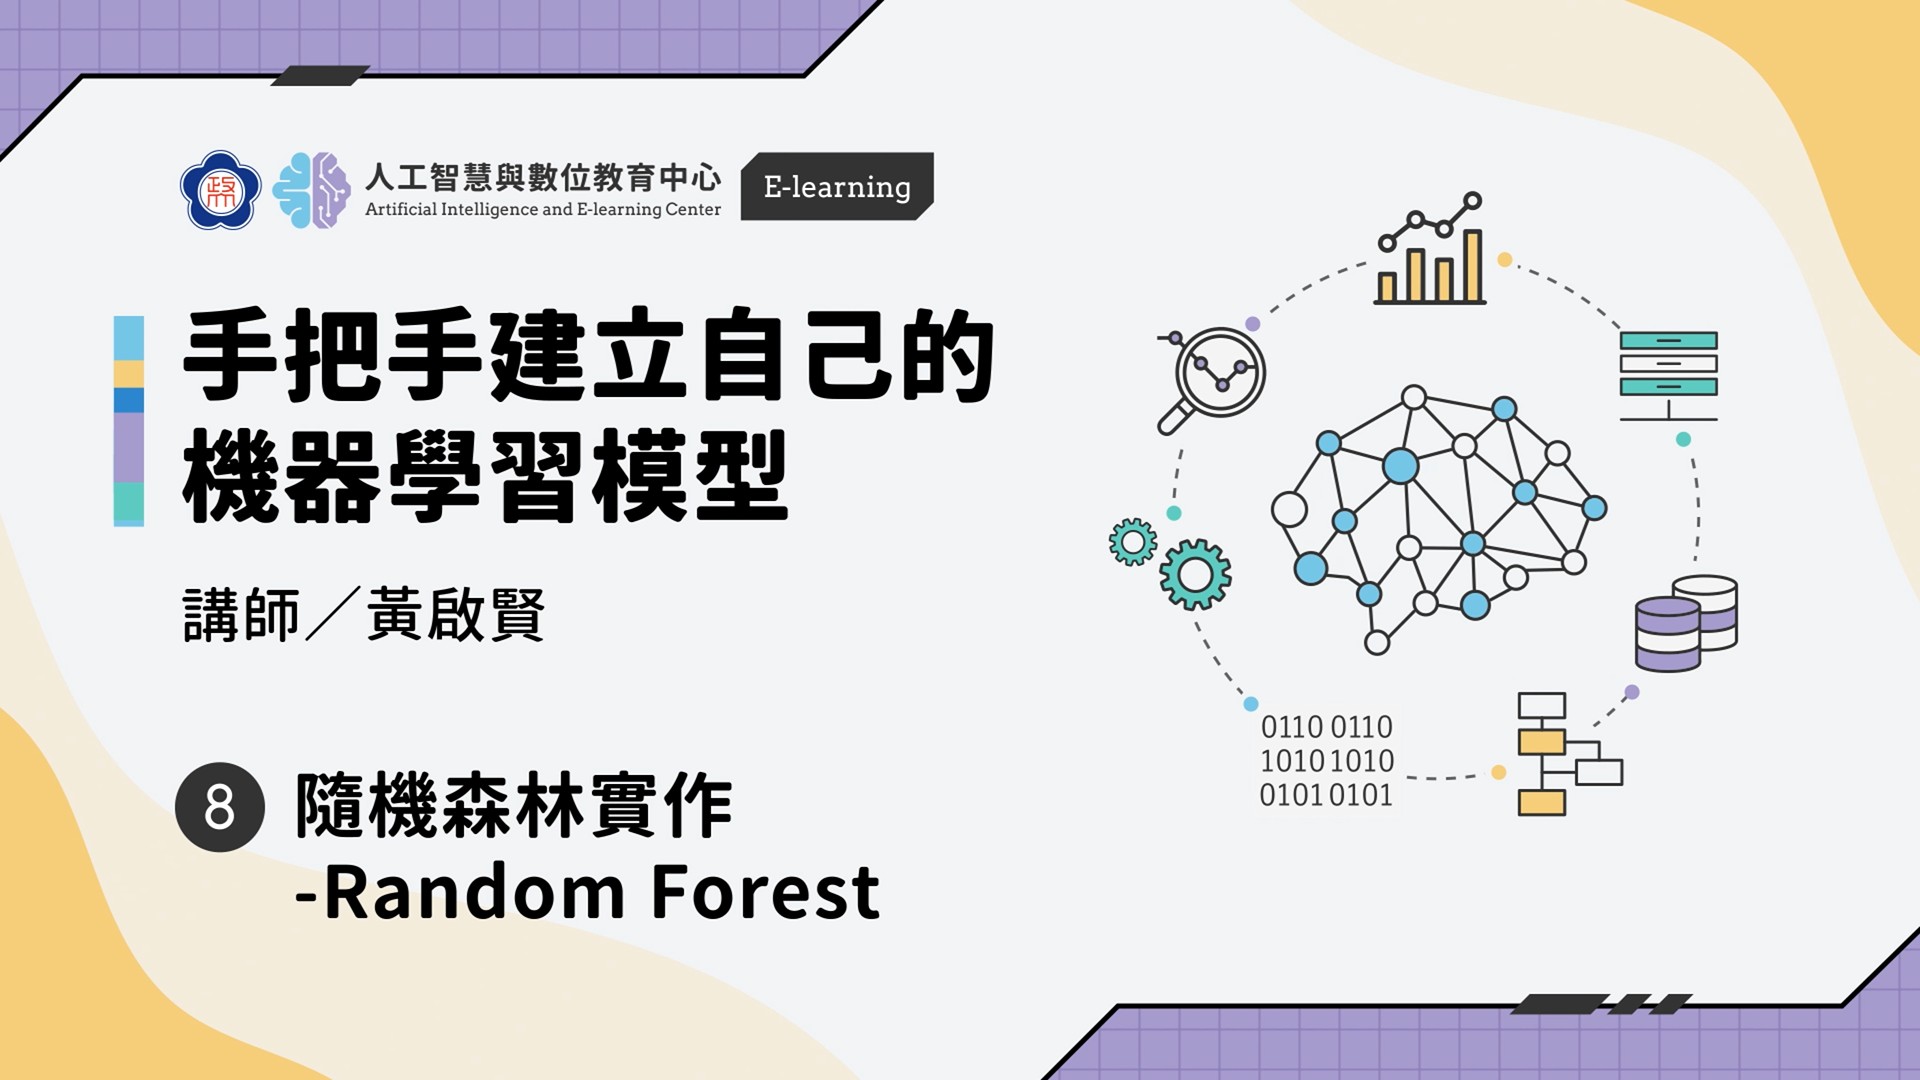 #8【手把手建立自己的機器學習模型】隨機森林實作 -Random Forest | 政大 AI中心